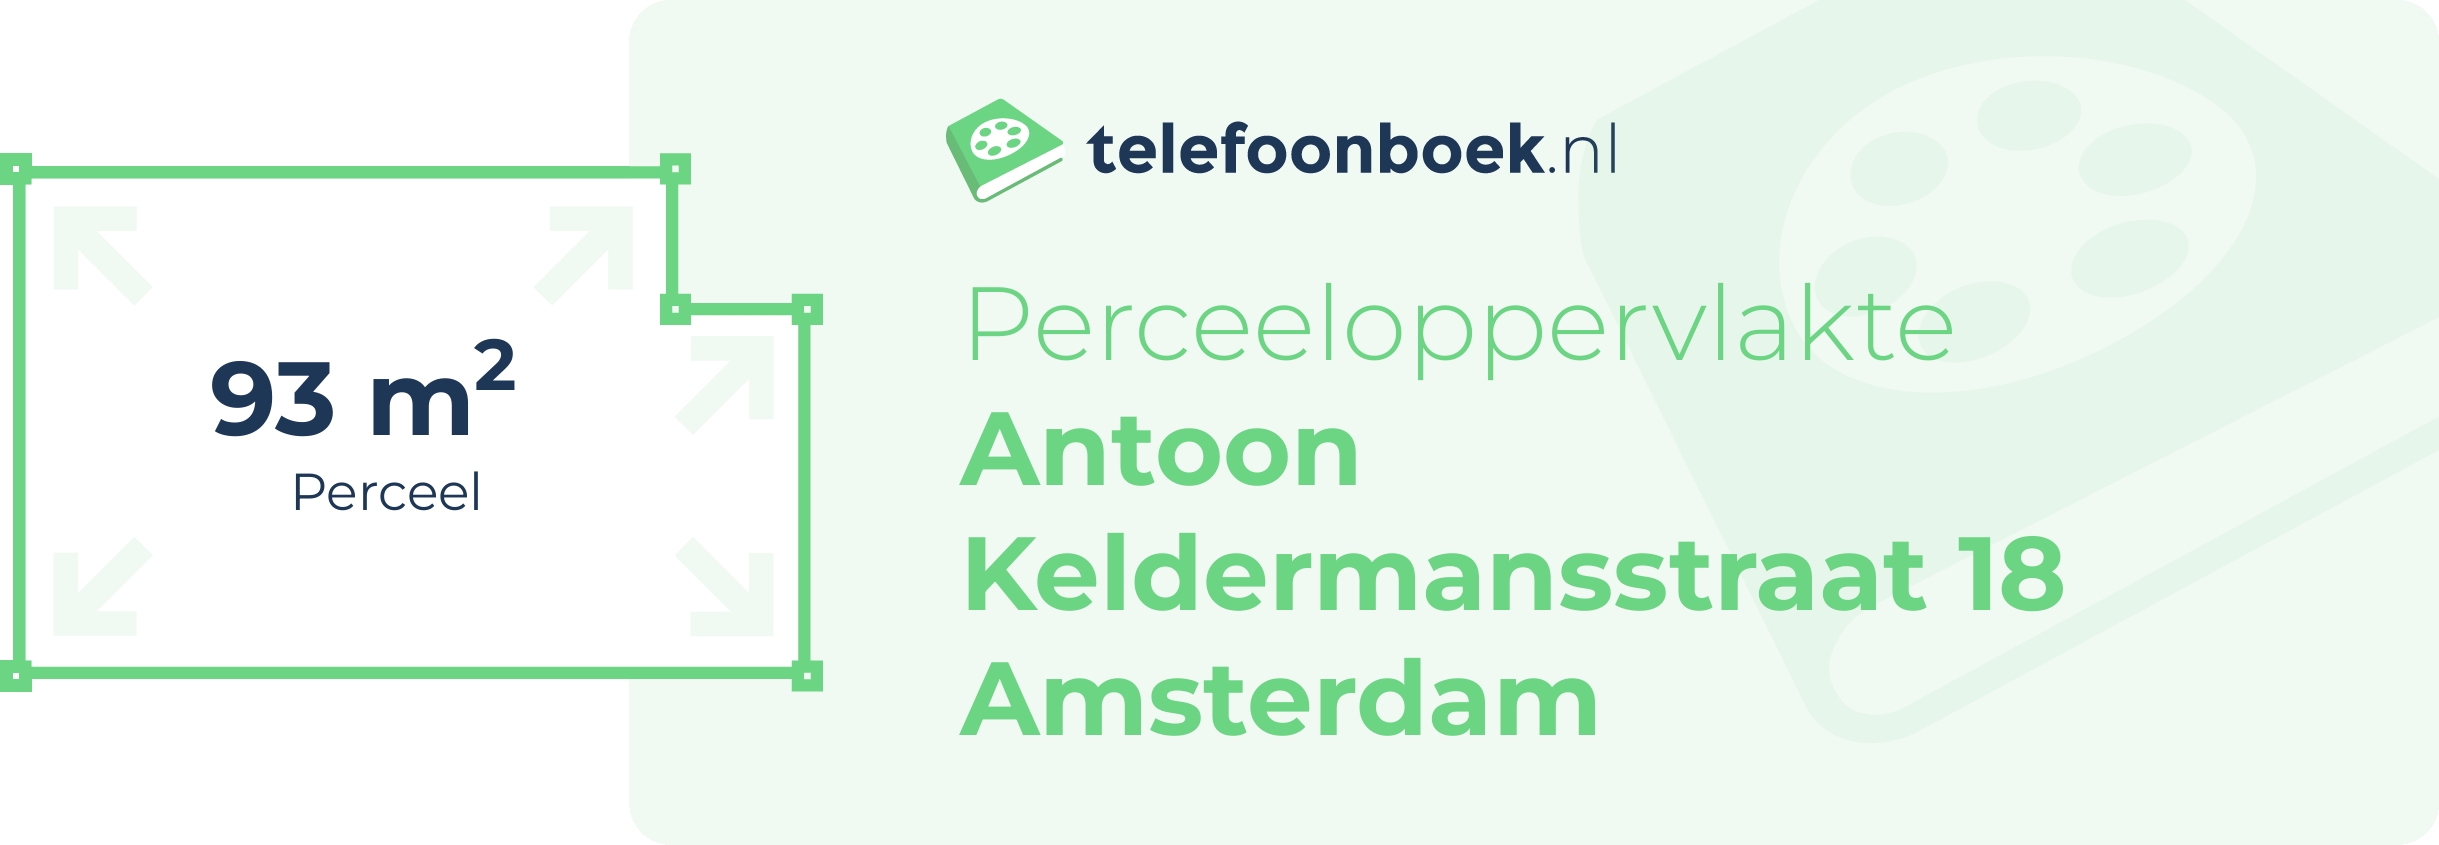 Perceeloppervlakte Antoon Keldermansstraat 18 Amsterdam